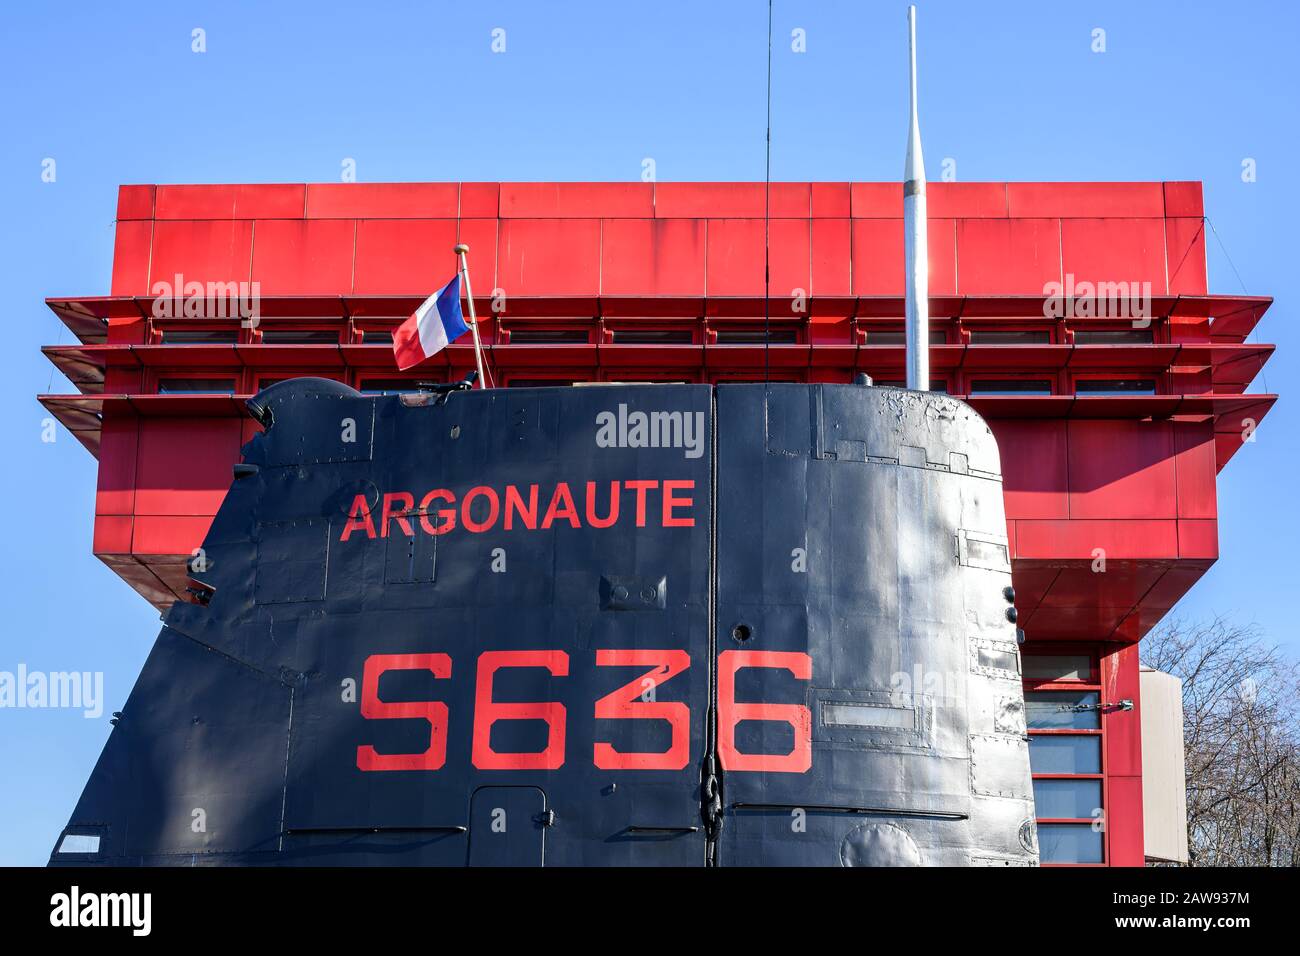 Paris, FRANCE - 7 FÉVRIER 2020: Argonaute (S636) sous-marin de la Marine française exposé dans le Parc de la Villette à Paris, converti en un navire muséal. Banque D'Images